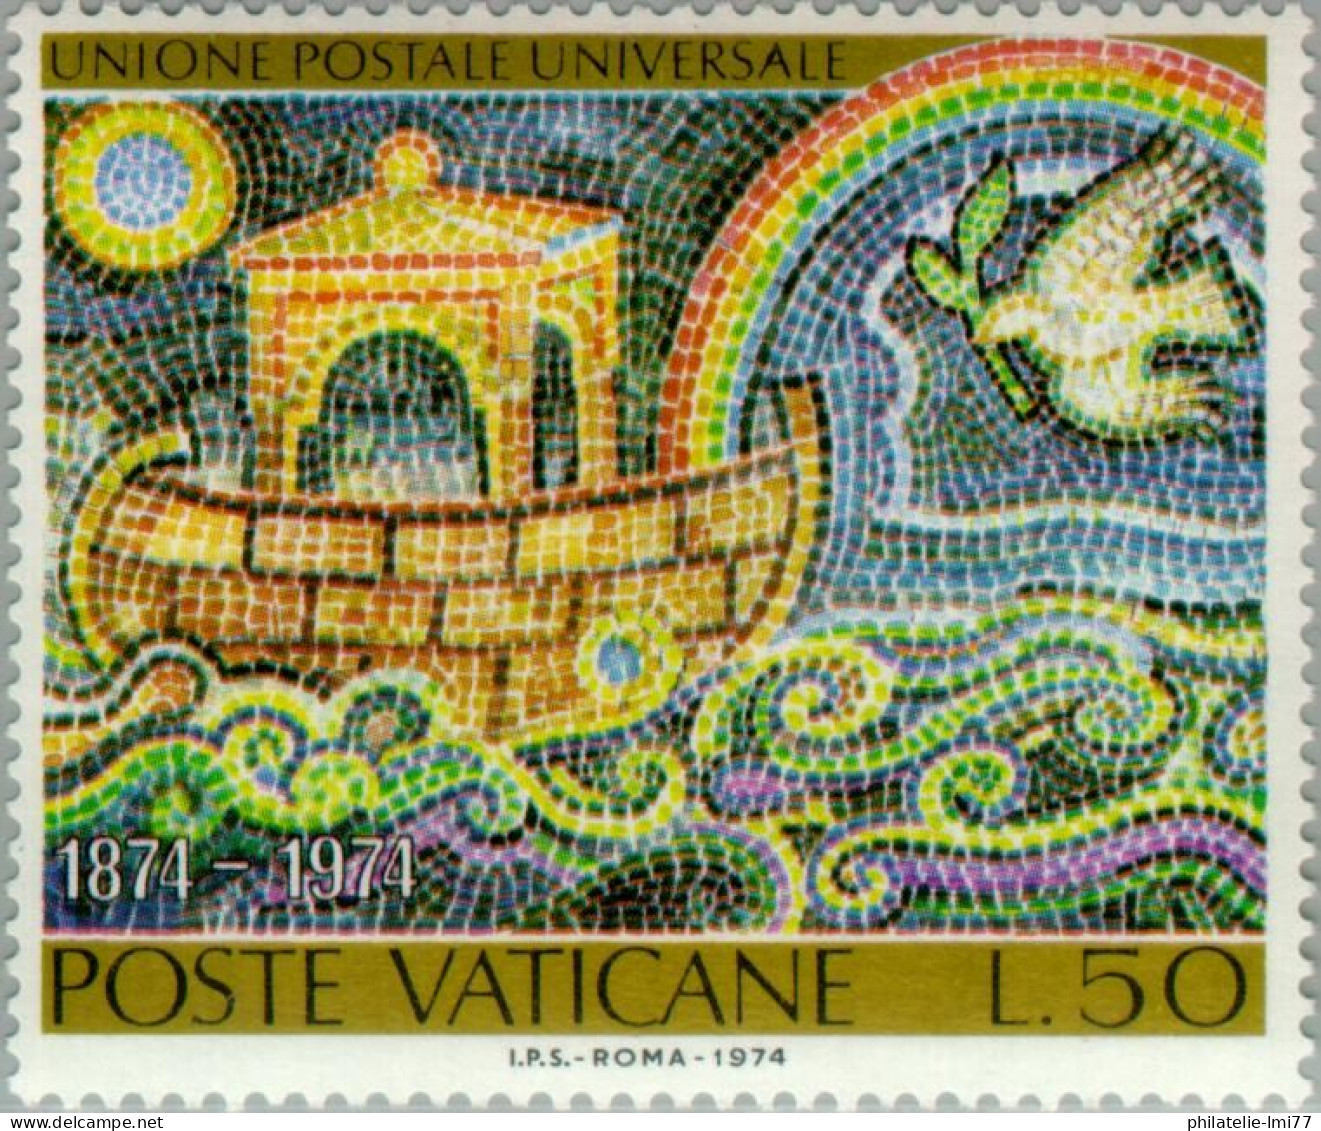 Timbre Du Vatican N° 569 Neuf Sans Charnière - Nuevos